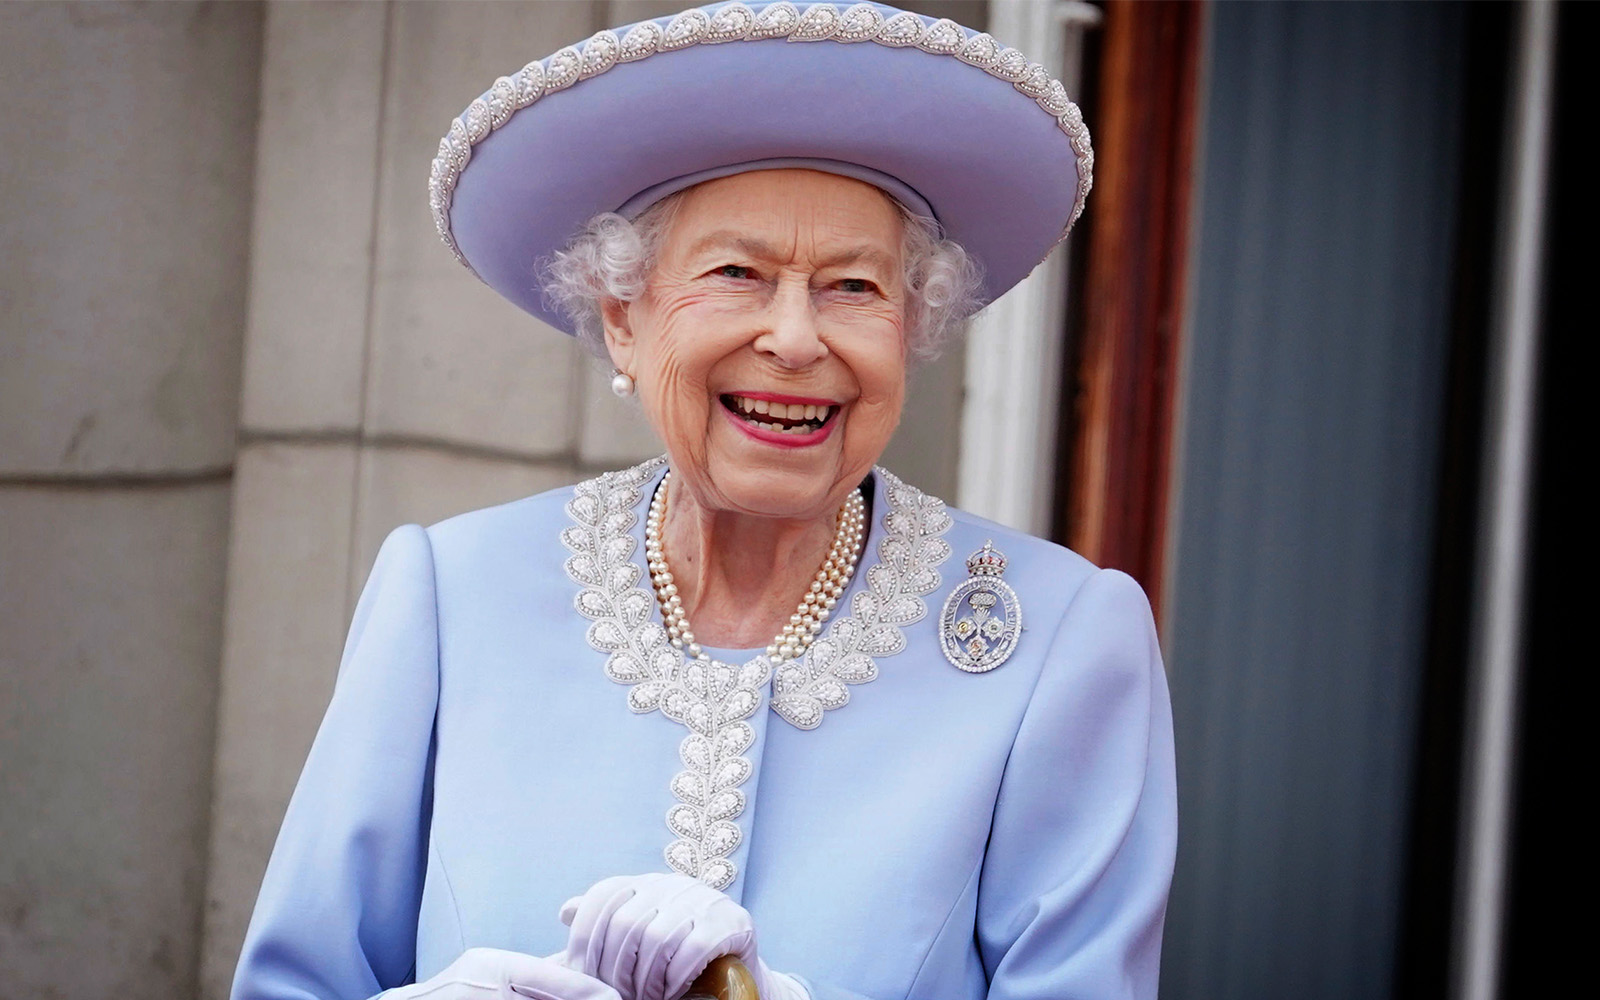 Queen Elizabeth II, UK's Longest Serving Monarch, Dies at 96